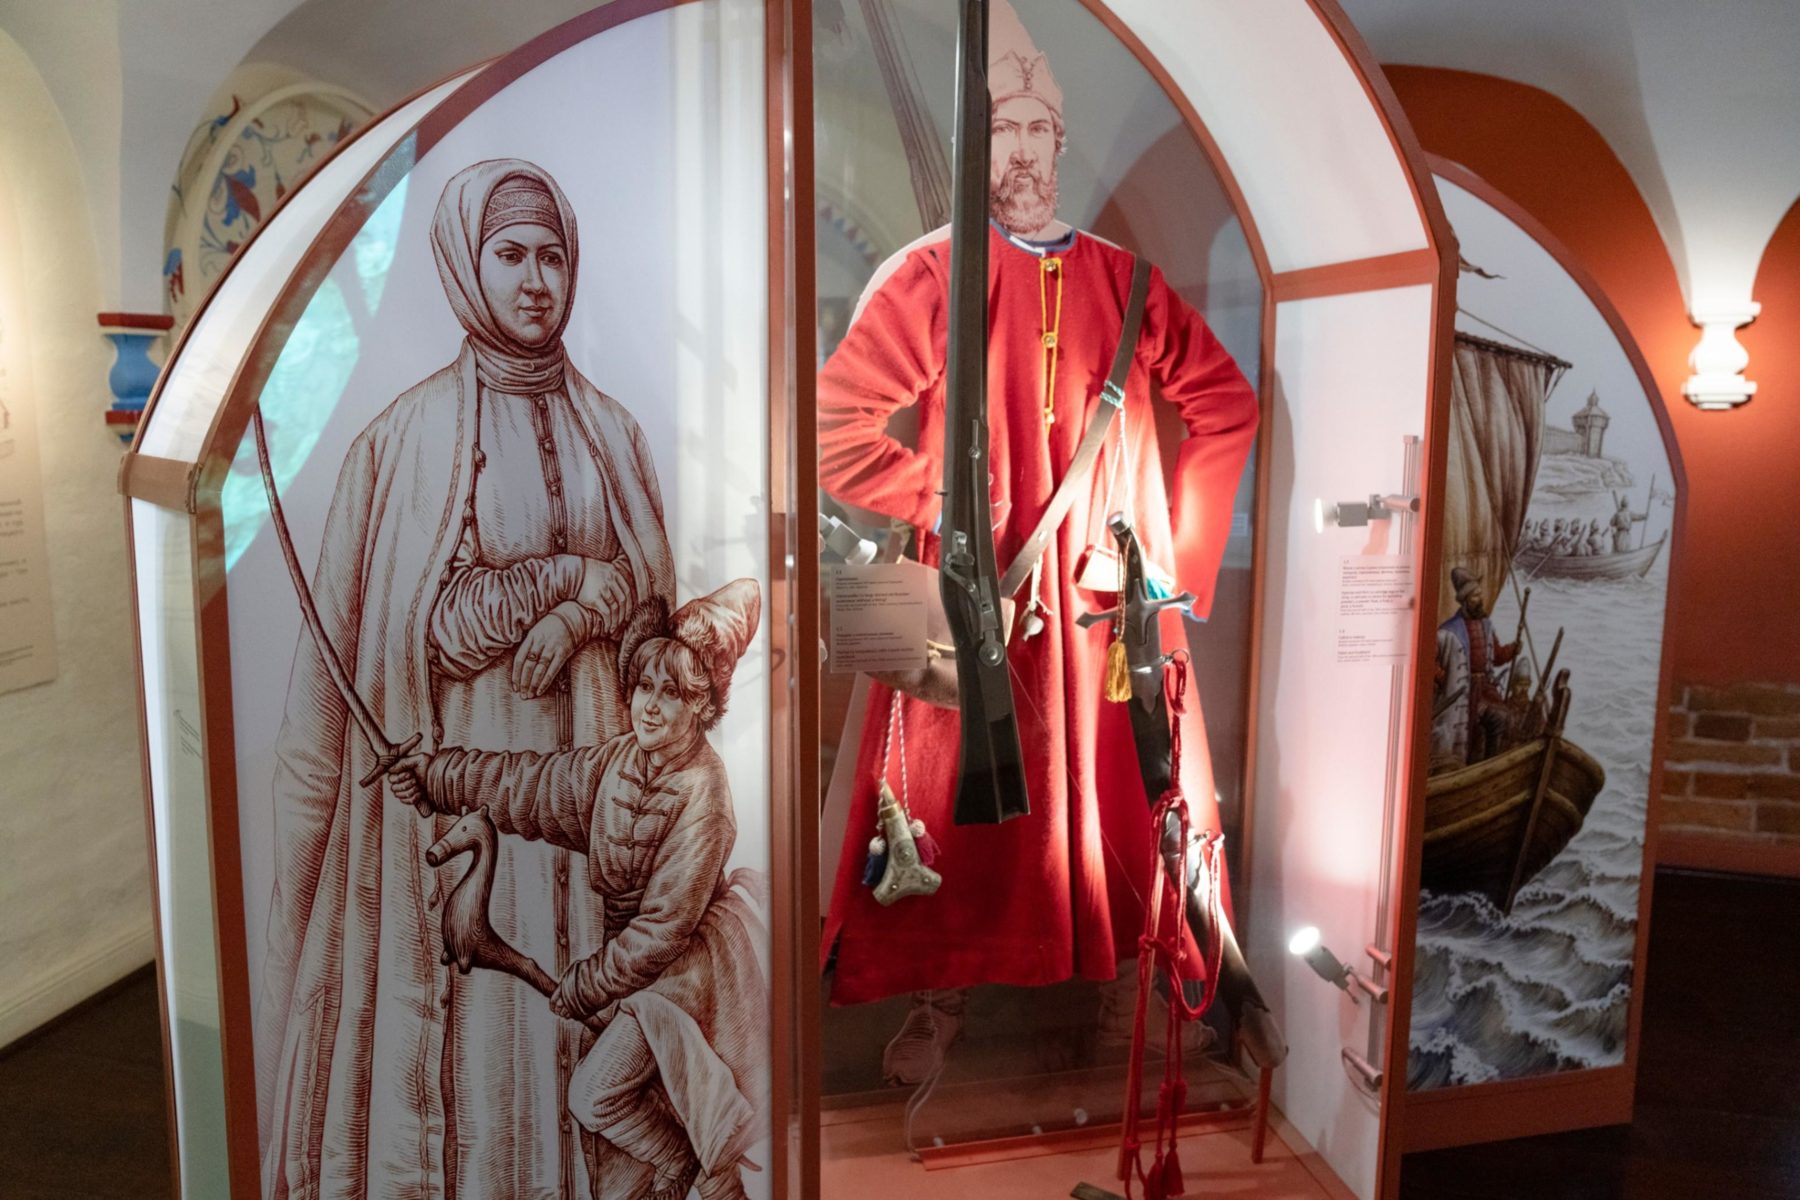 Посещение музея «Стрелецкие палаты»  – события на сайте «Московские Сезоны»